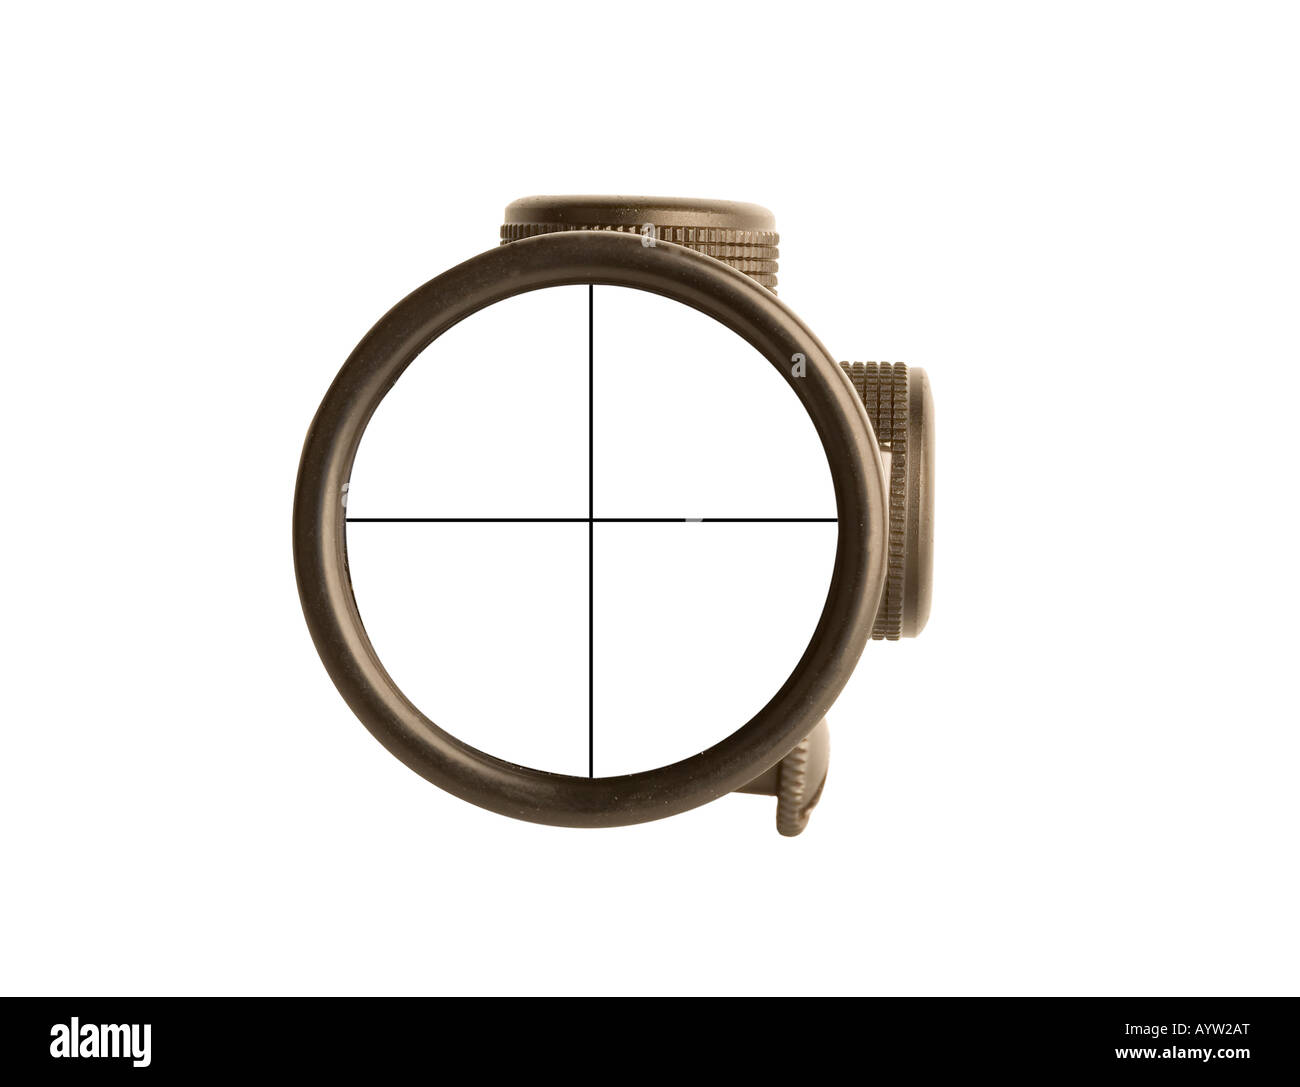 Imagen de un rifle scope sight utilizados para apuntar con un arma Foto de stock